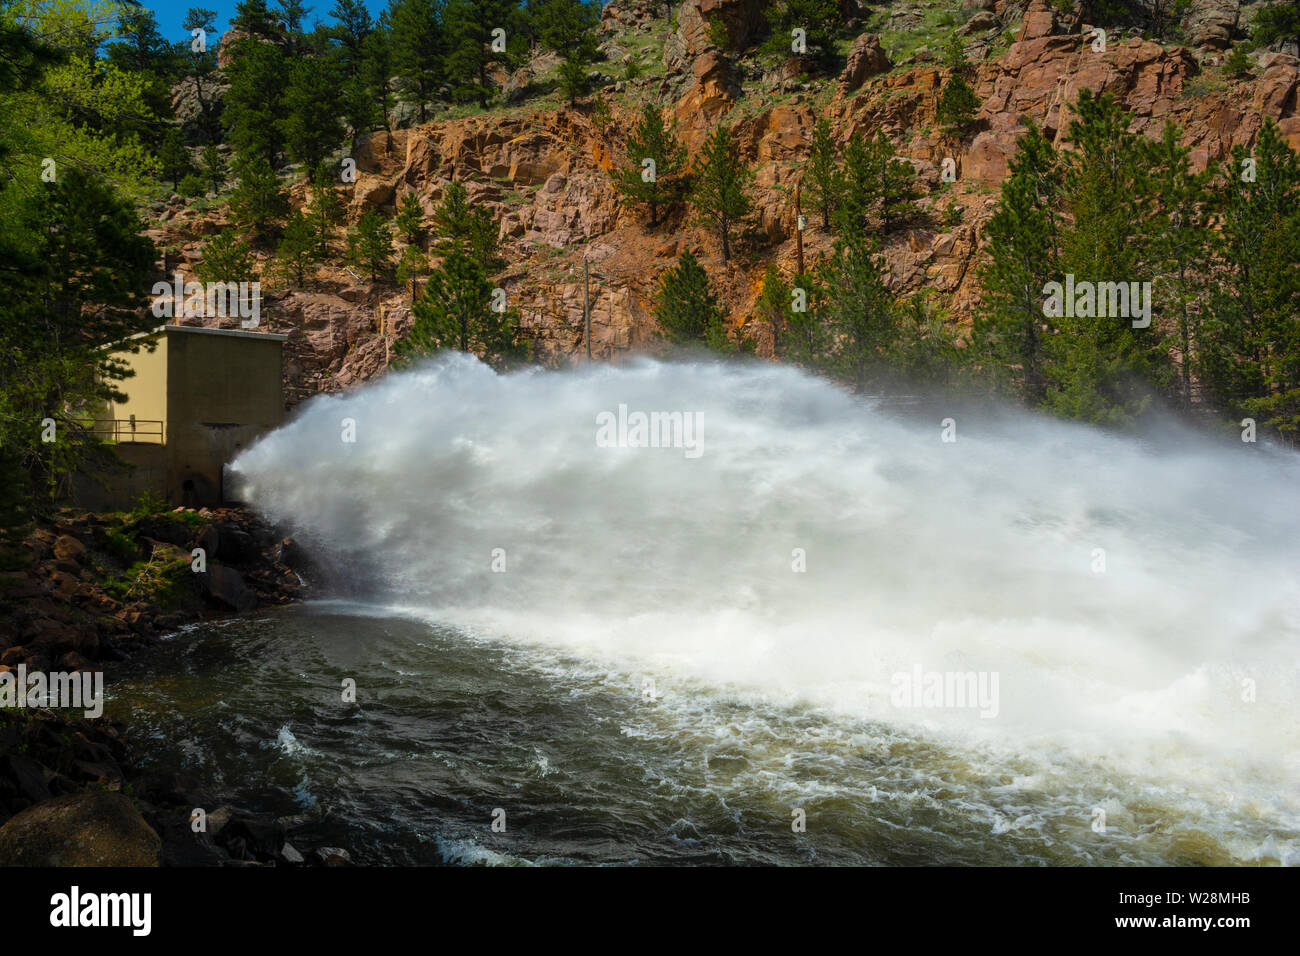 Brotes de agua desde la presa de roca Botón Floodgate en las montañas del oeste de Longmont, Colorado Foto de stock